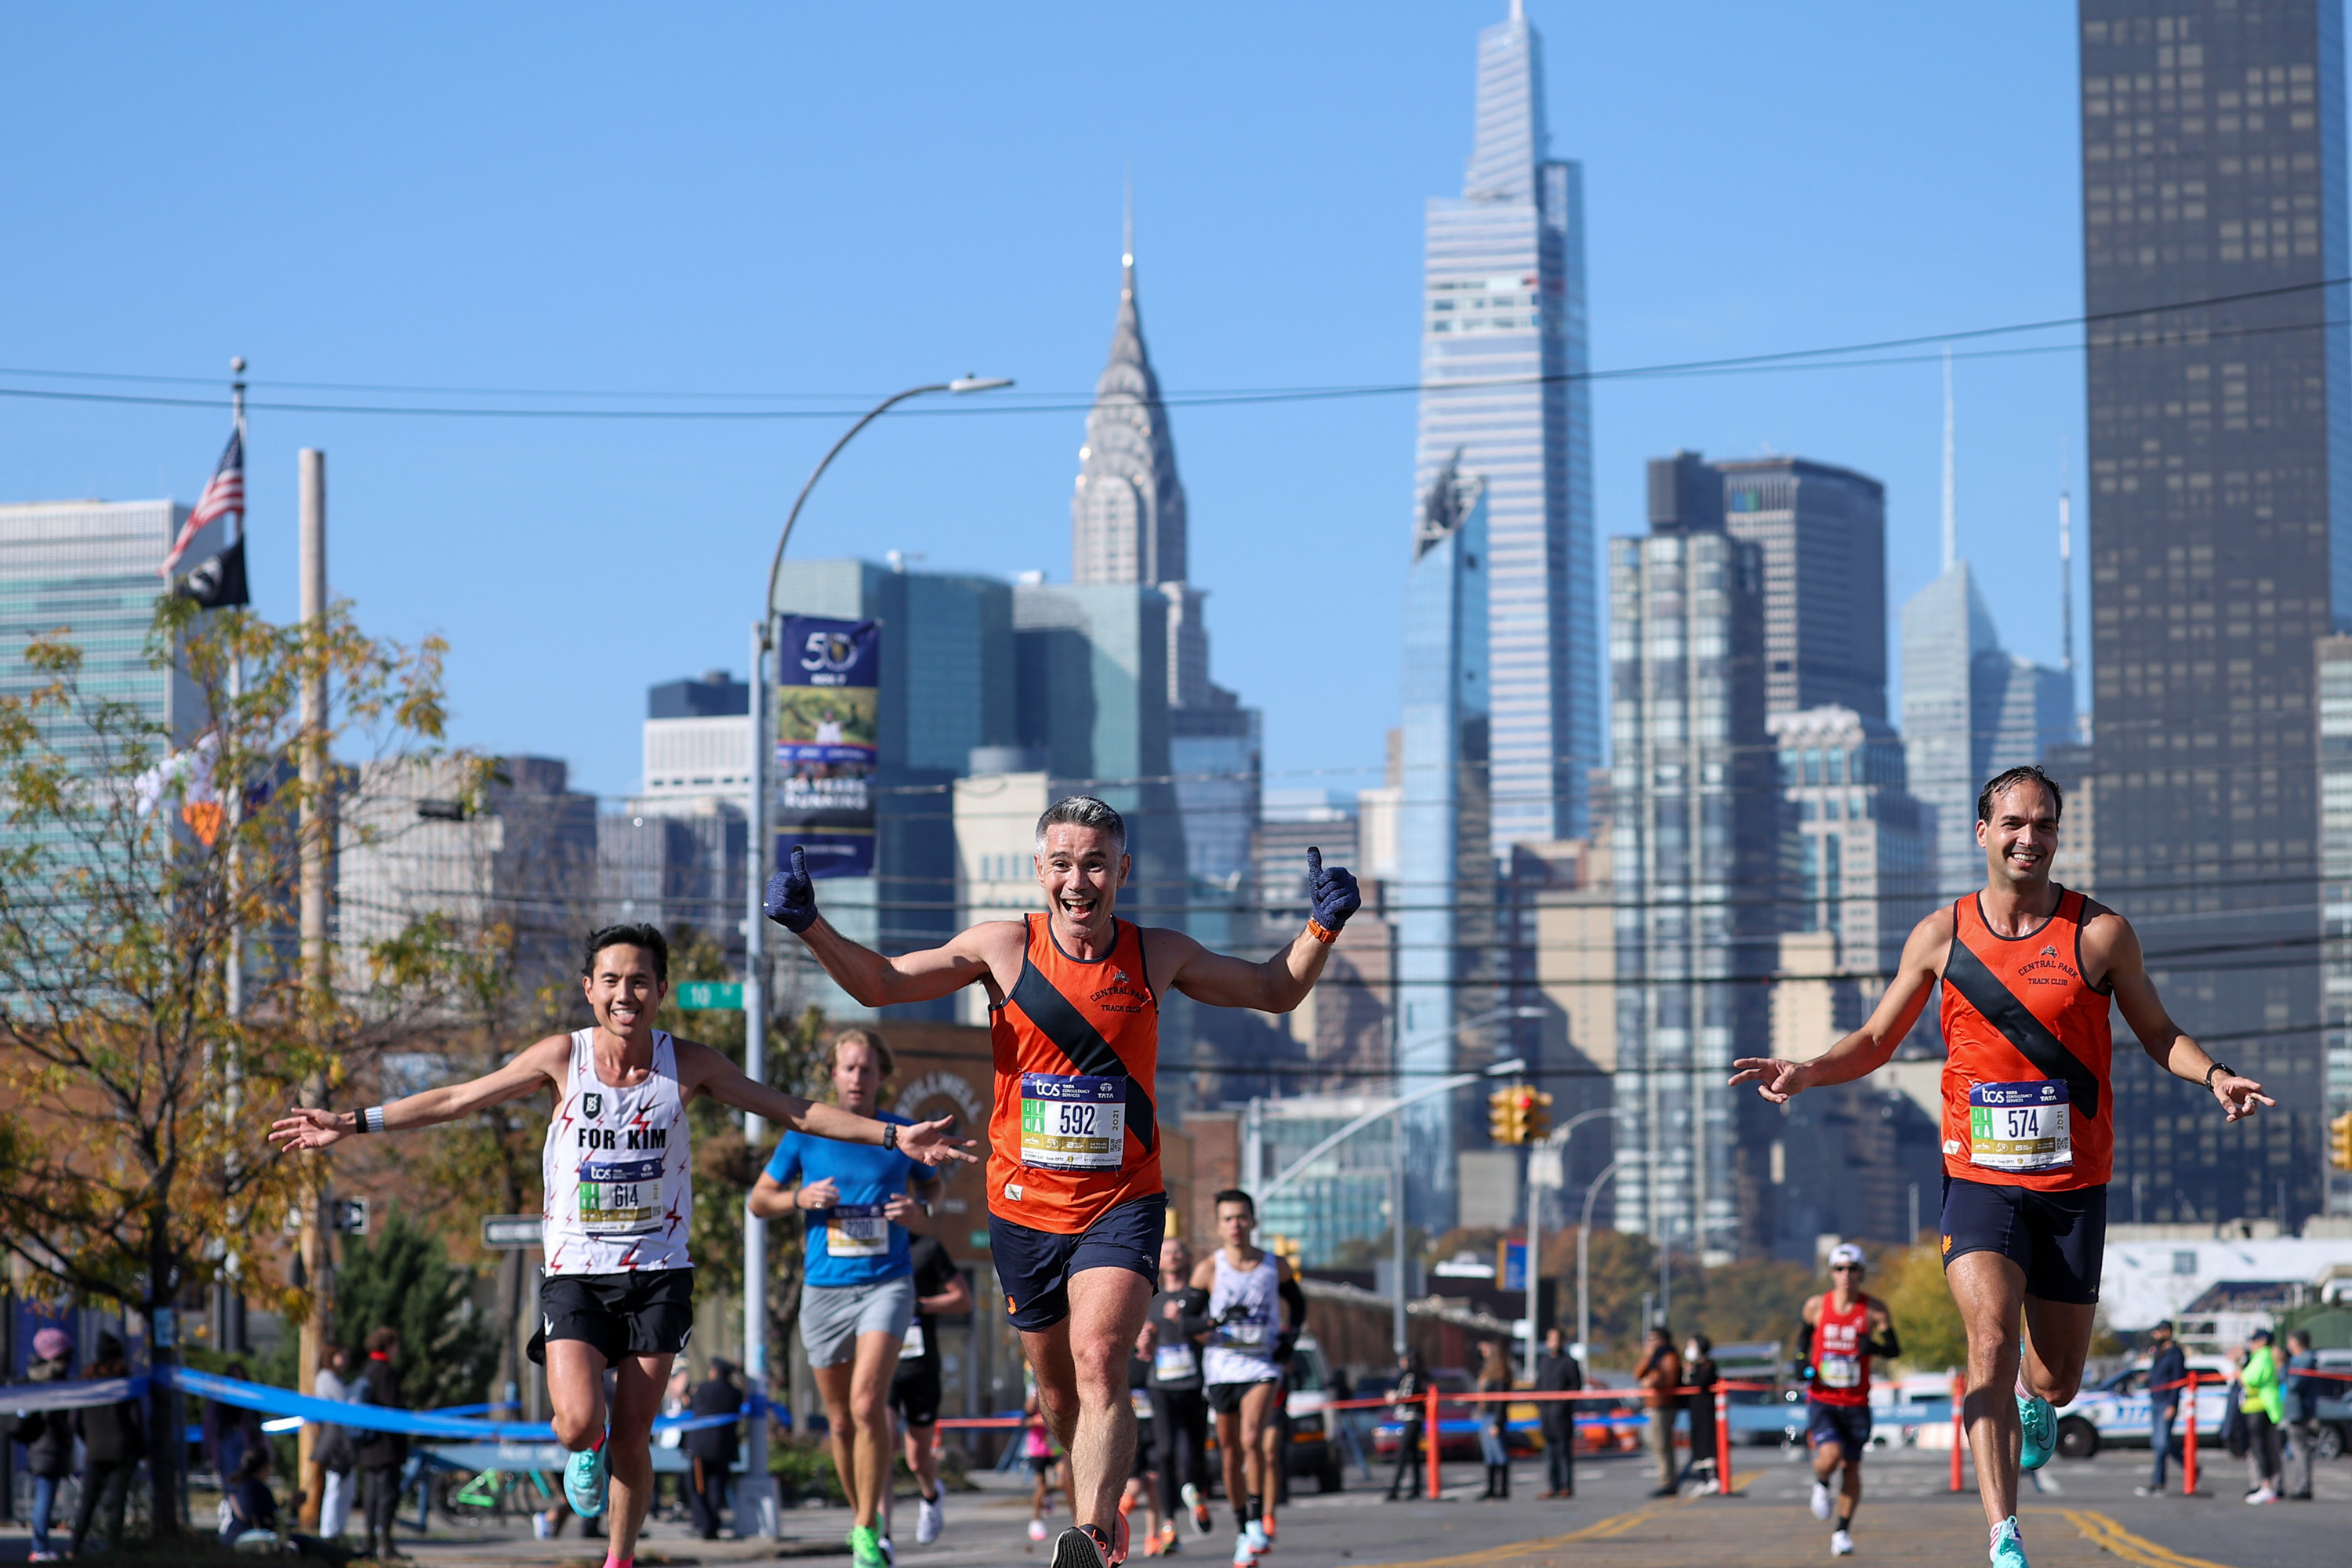 NY Marathon runners